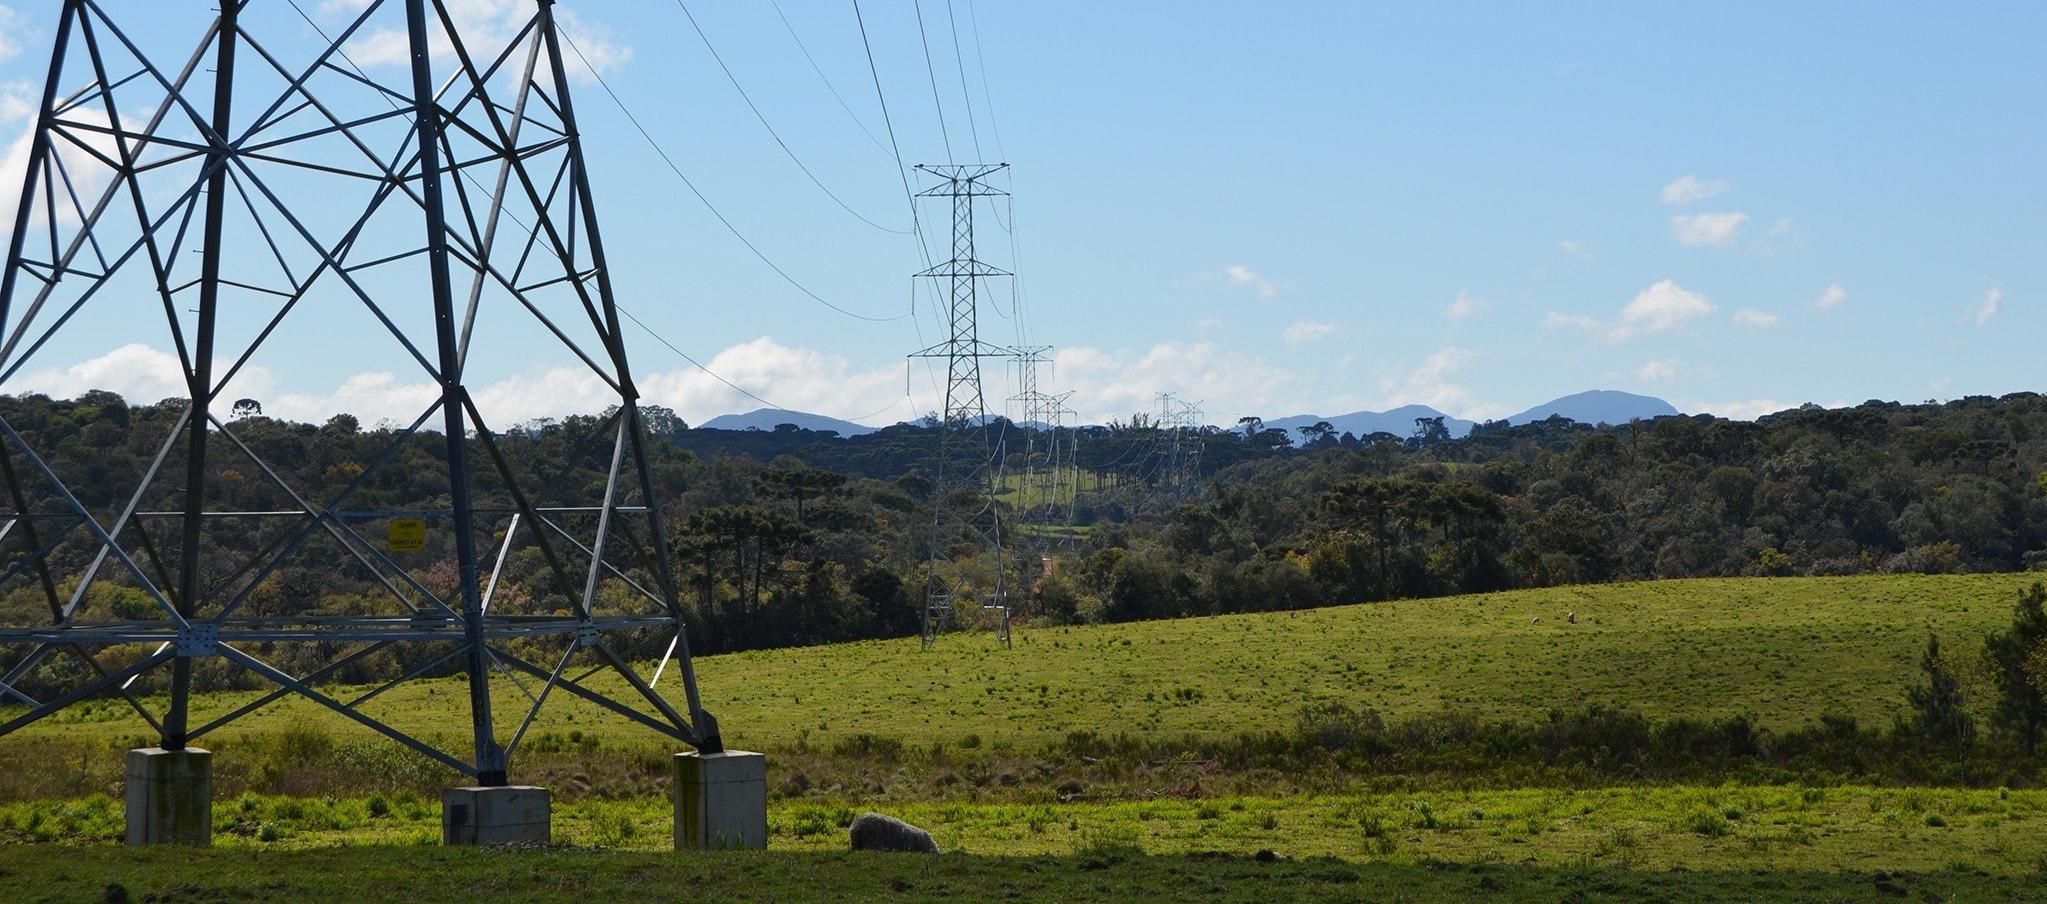 Ecuador vive la peor de la crisis por energía eléctrica con cortes diarios de luz